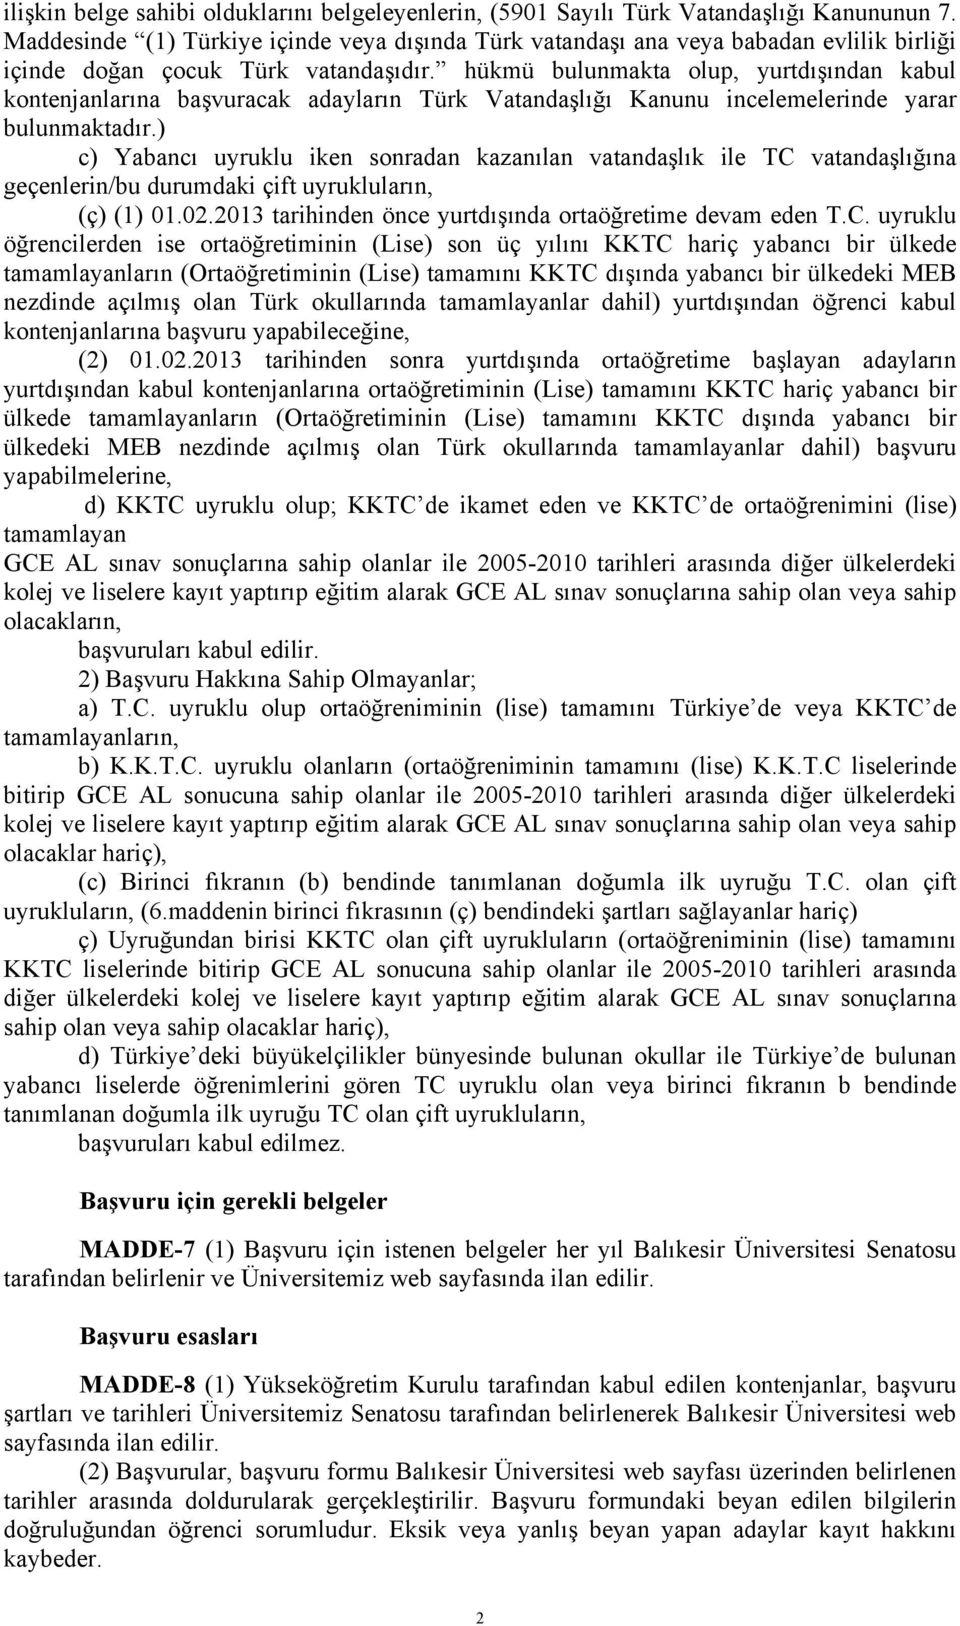 hükmü bulunmakta olup, yurtdışından kabul kontenjanlarına başvuracak adayların Türk Vatandaşlığı Kanunu incelemelerinde yarar bulunmaktadır.